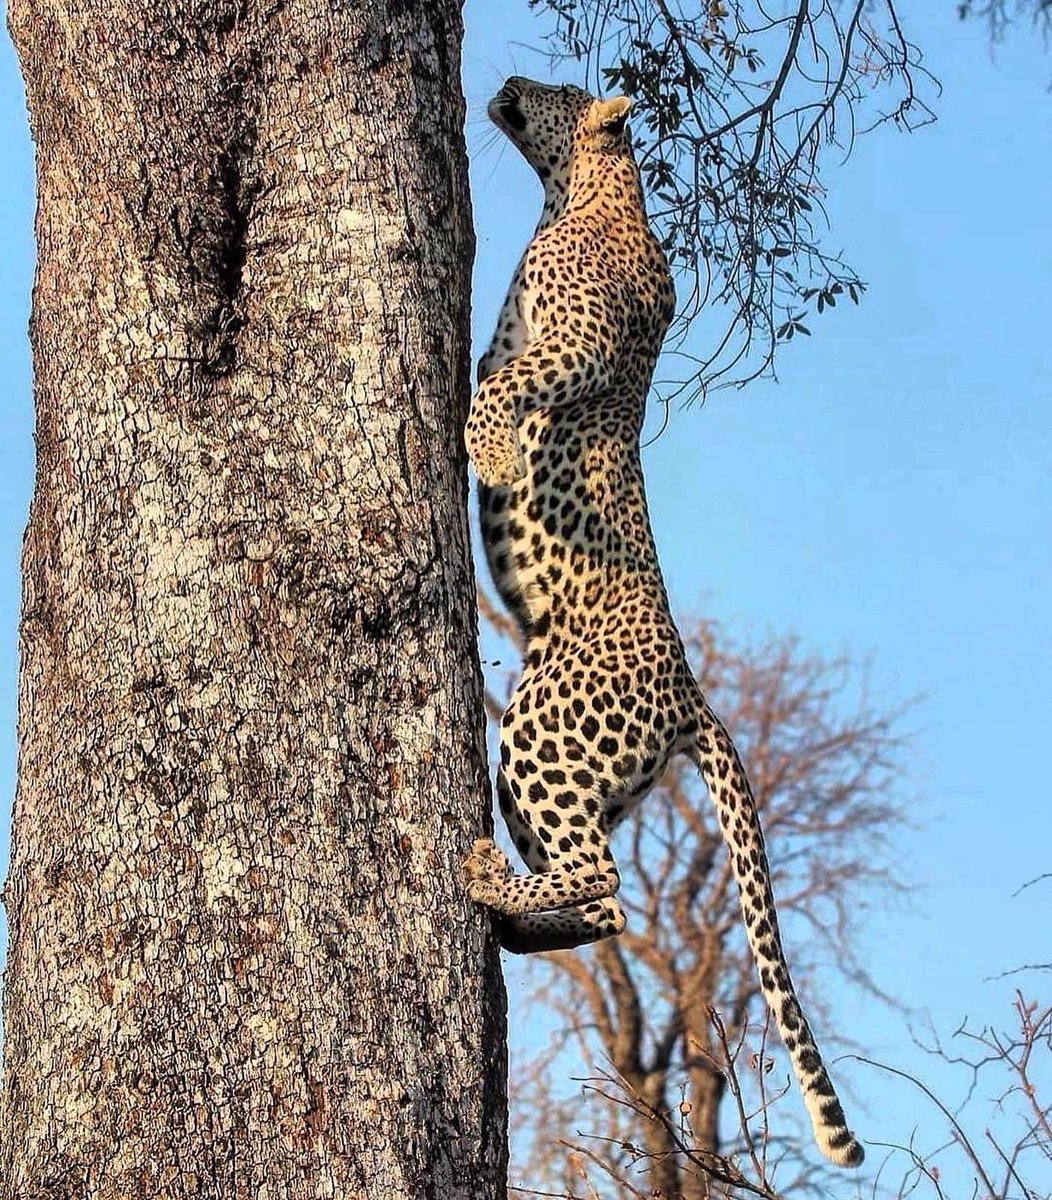 La beauté tacheté défie la gravité comme un patron ! 😍
Superbe capture par #wildographer, pilote de conservation & super guide @liamburr_wildlife

#Wildography #leopard #liamburr_wildlife #liamburrough #wildographyandsafaris